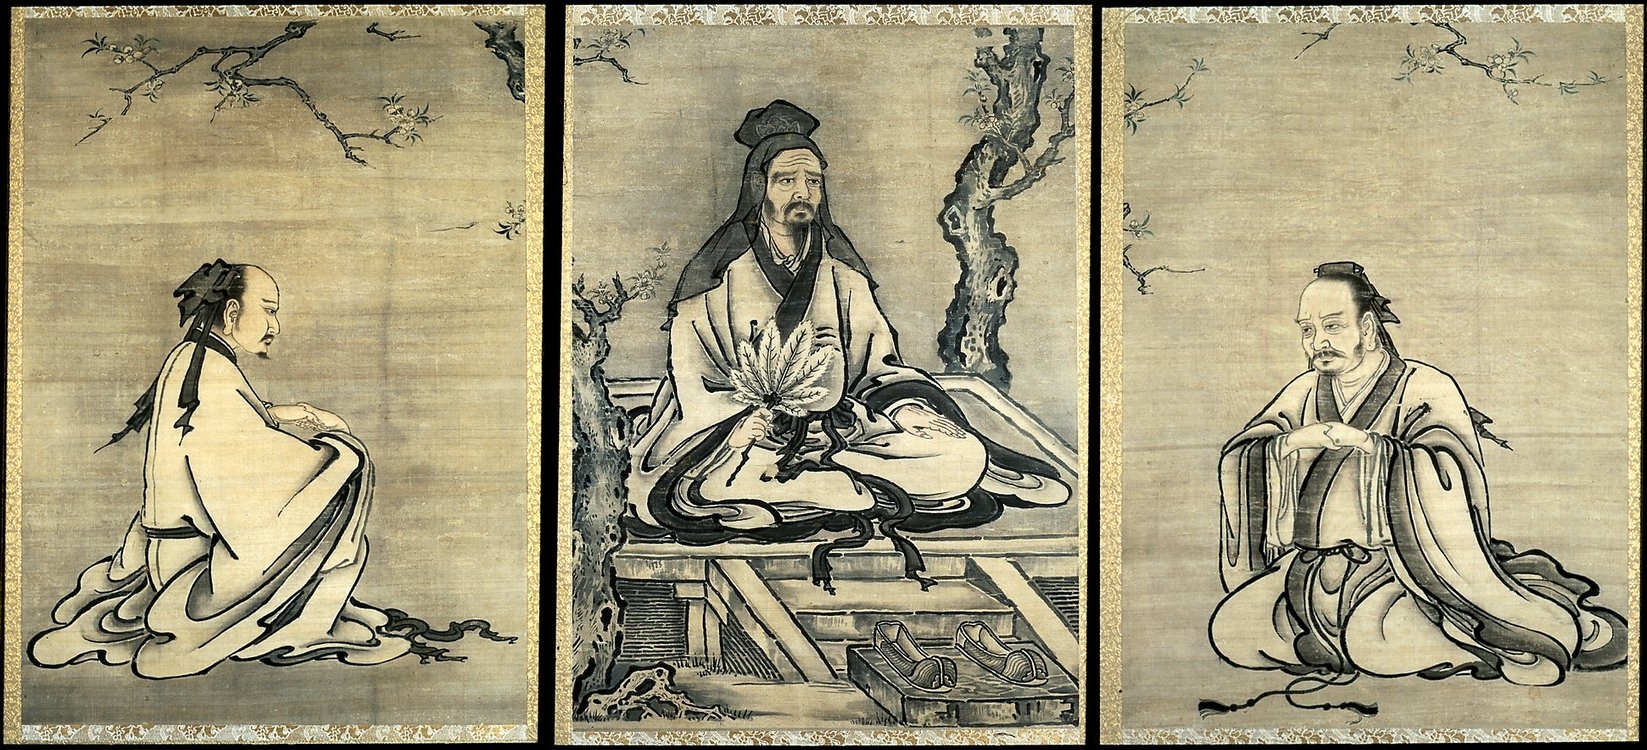 Цзюнь цзы. Древний Китай Конфуций. Цзюнь-Цзы благородный муж. Дзюн Цзы благородный муж. Цзюнь-Цзы в конфуцианстве.